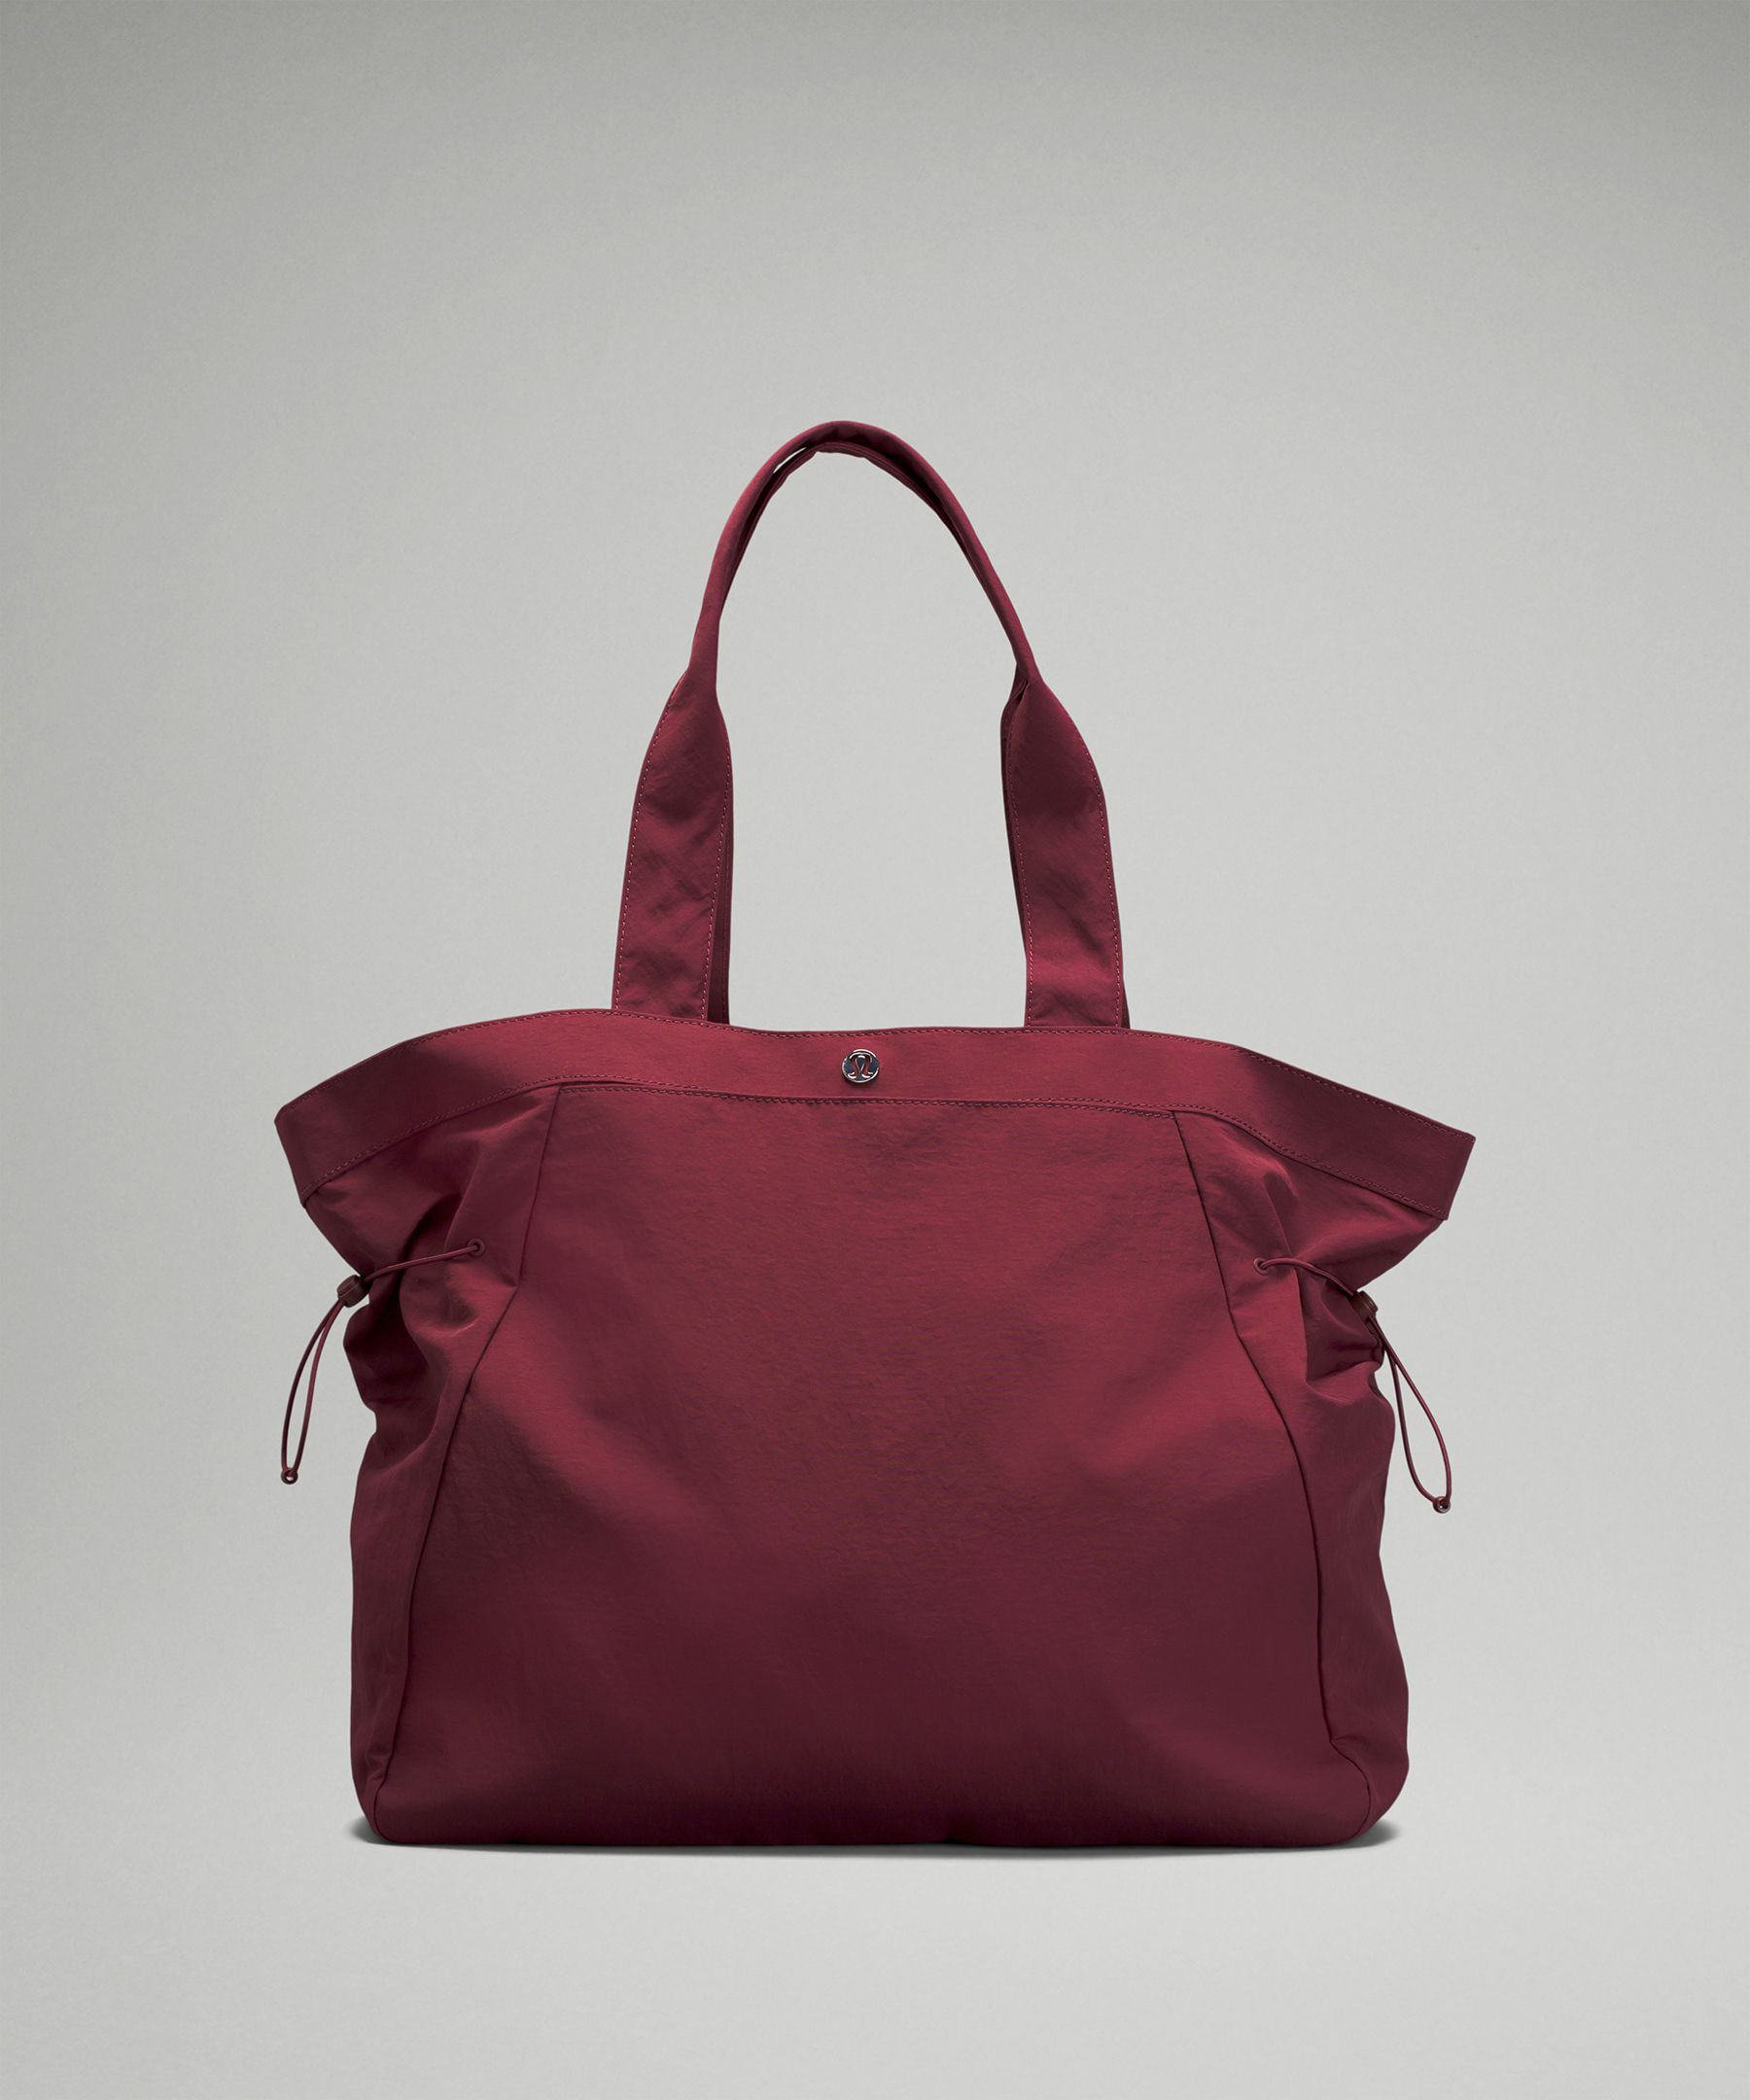 LULULEMON Bags for Women ModeSens